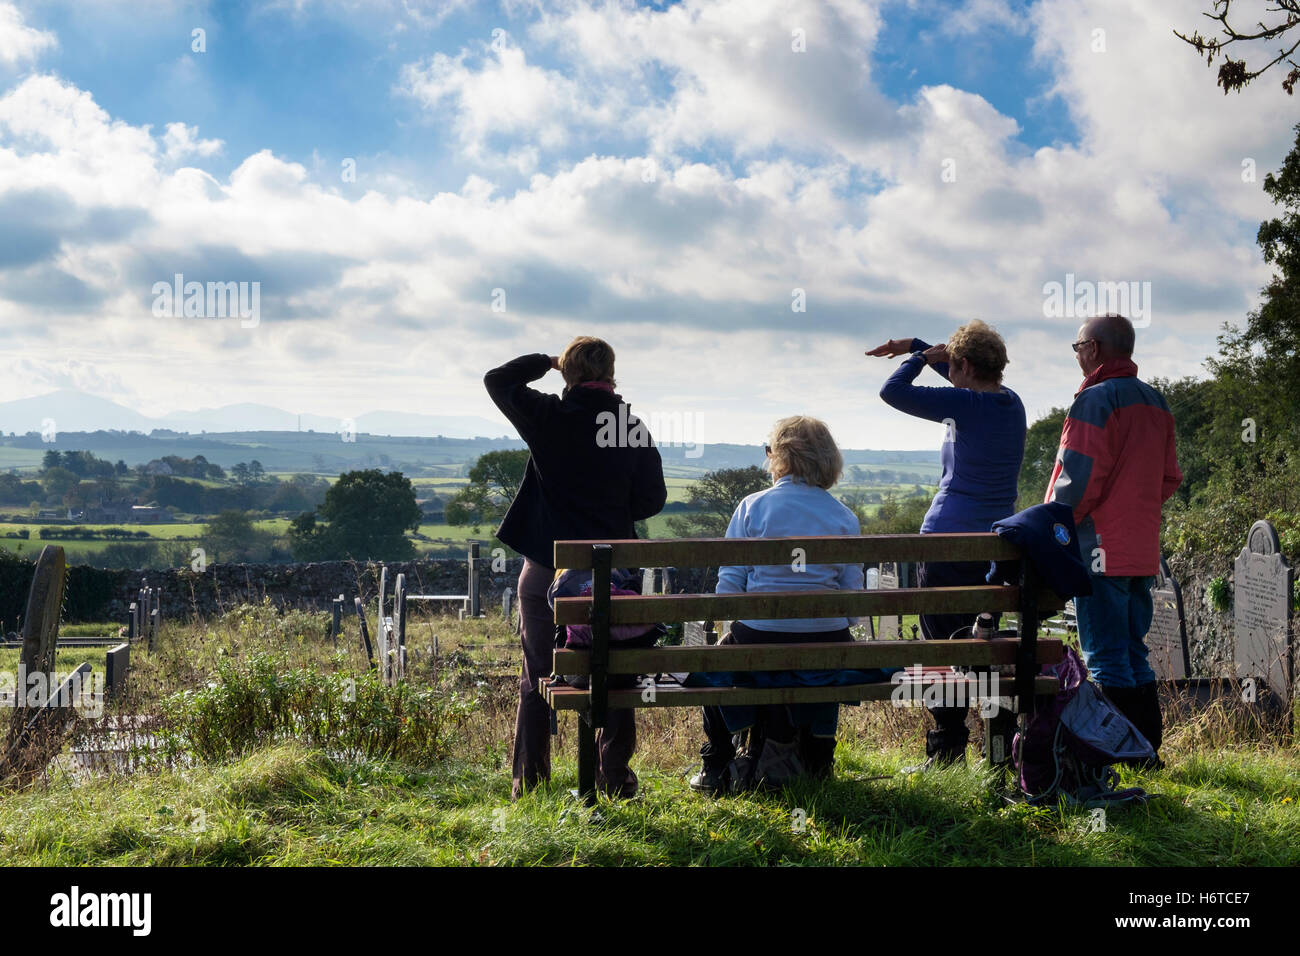 Les randonneurs se reposant sur un banc regardant vue depuis St Peter's churchyard de montagnes au loin. Llanbedregoch Anglesey Pays de Galles UK Banque D'Images